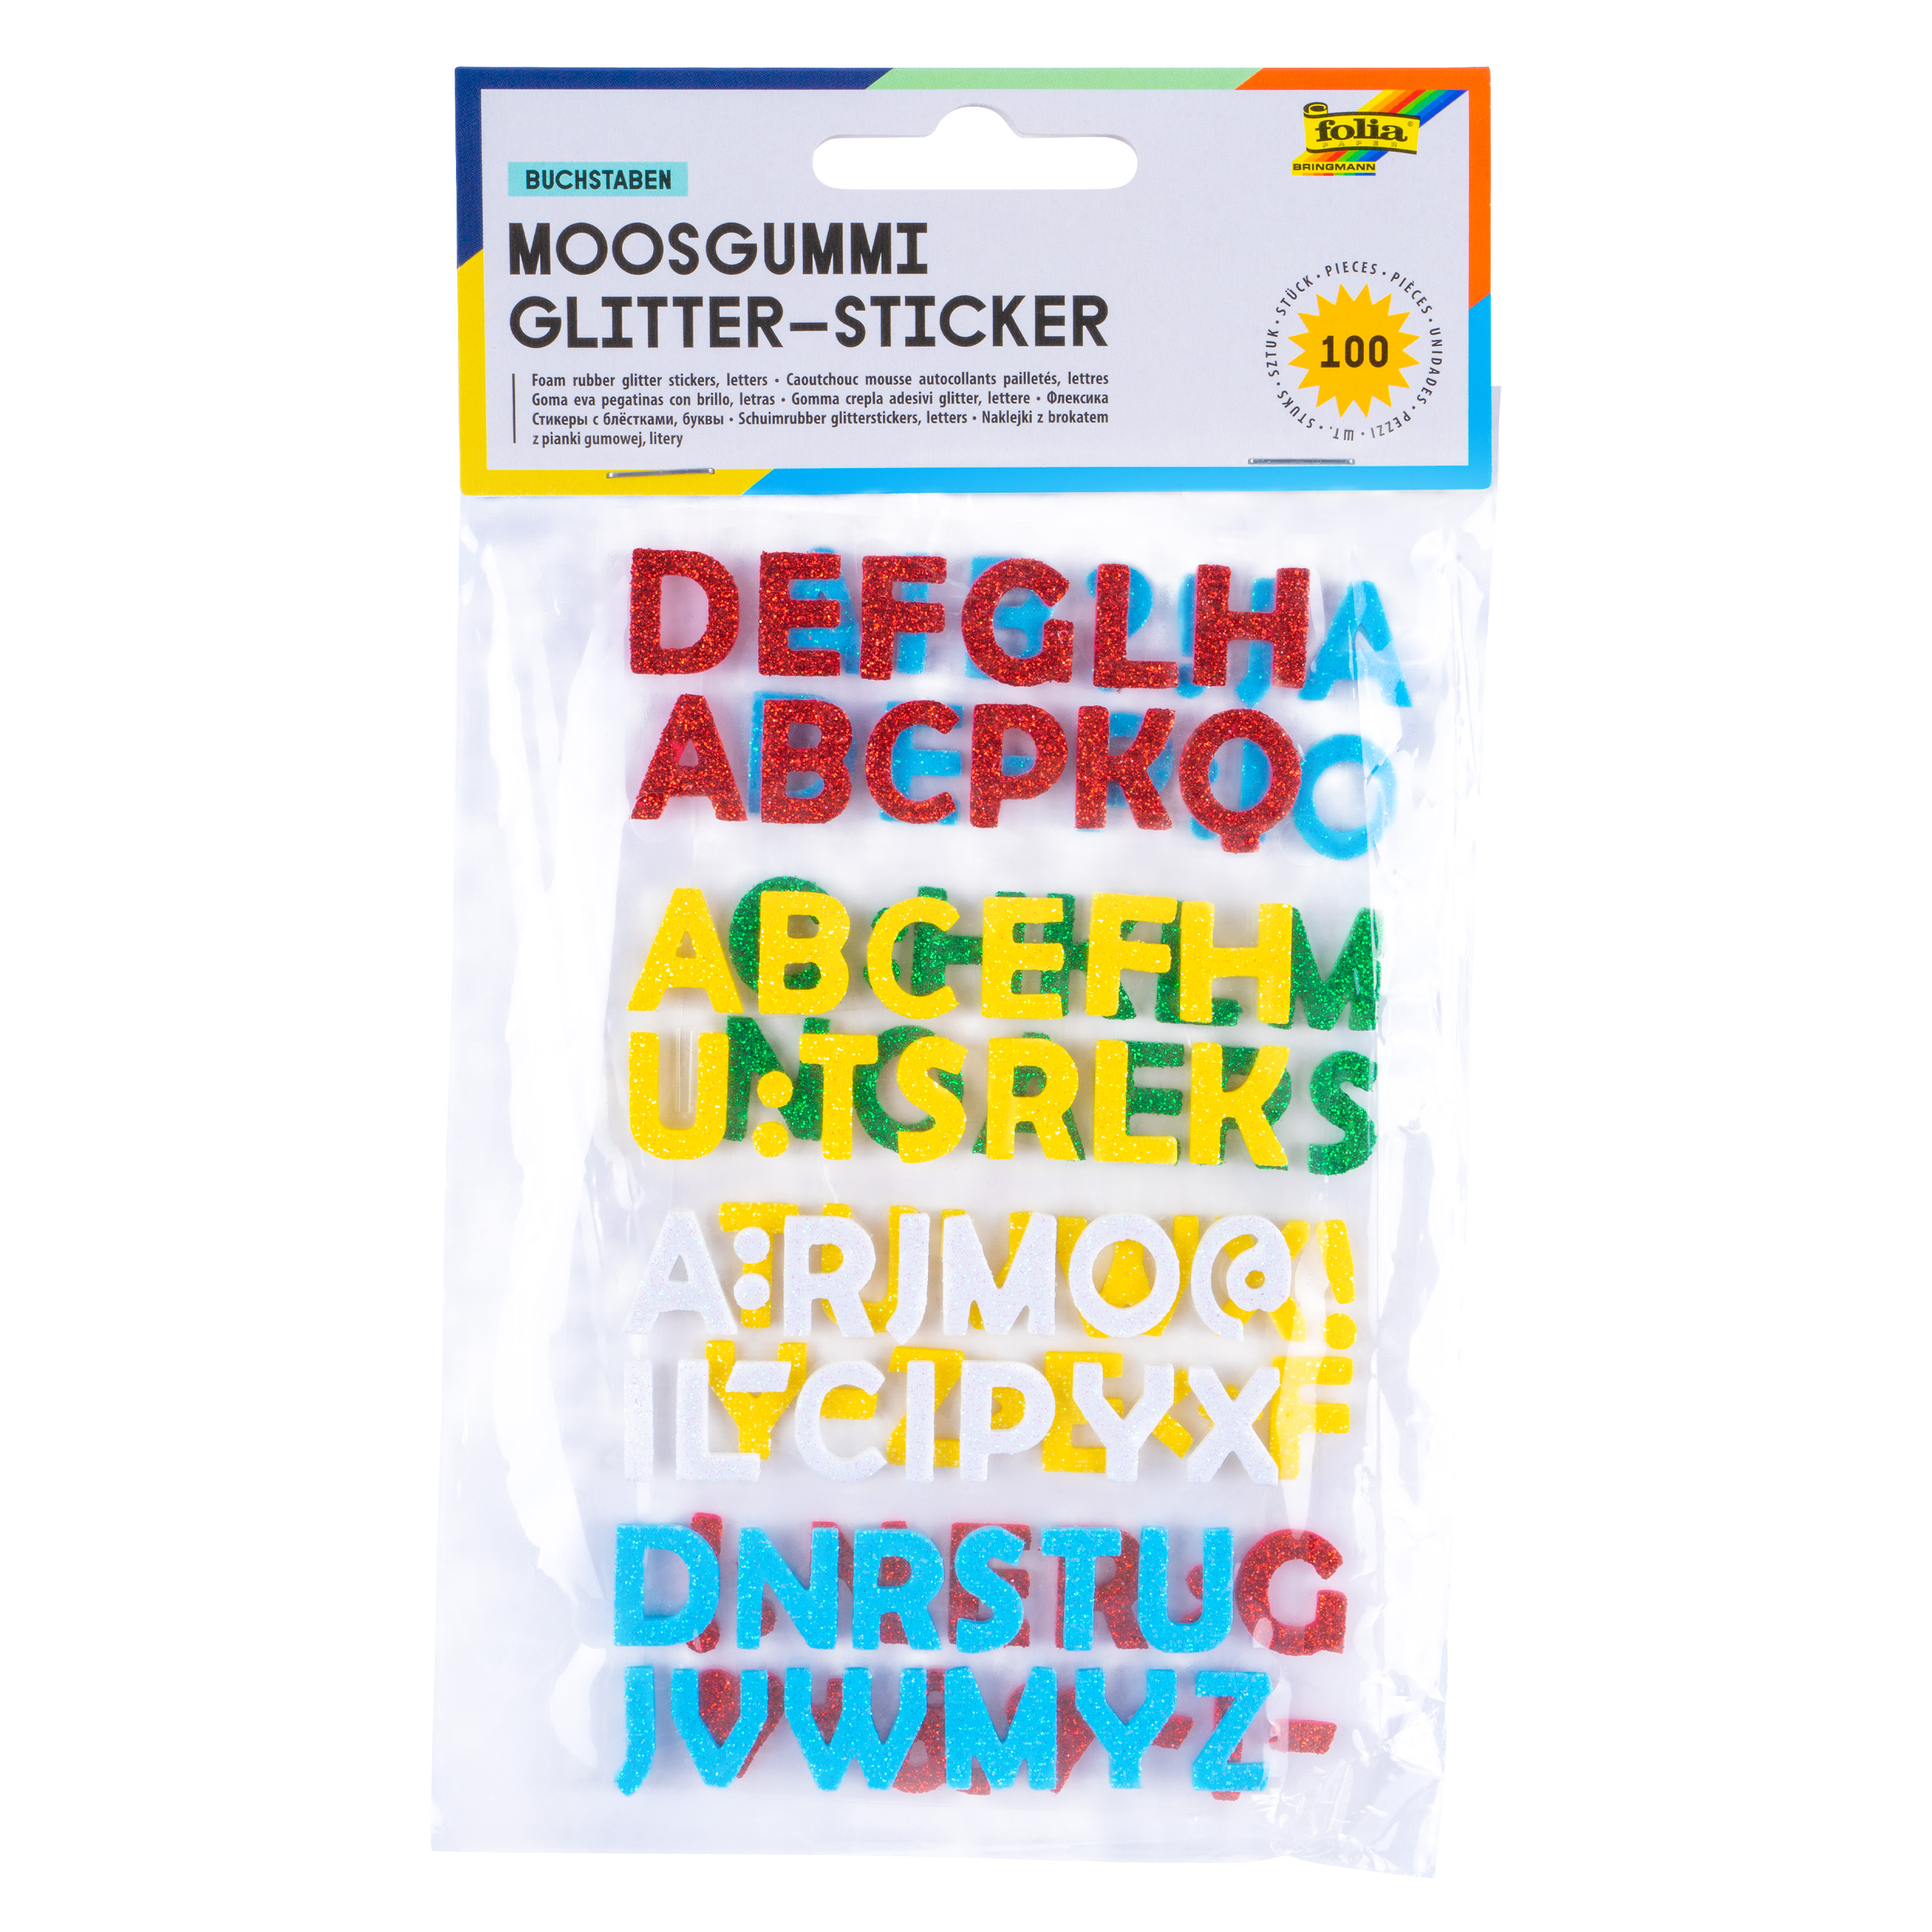 Moosgummi Glitter-Sticker 'Buchstaben', 100 Stück